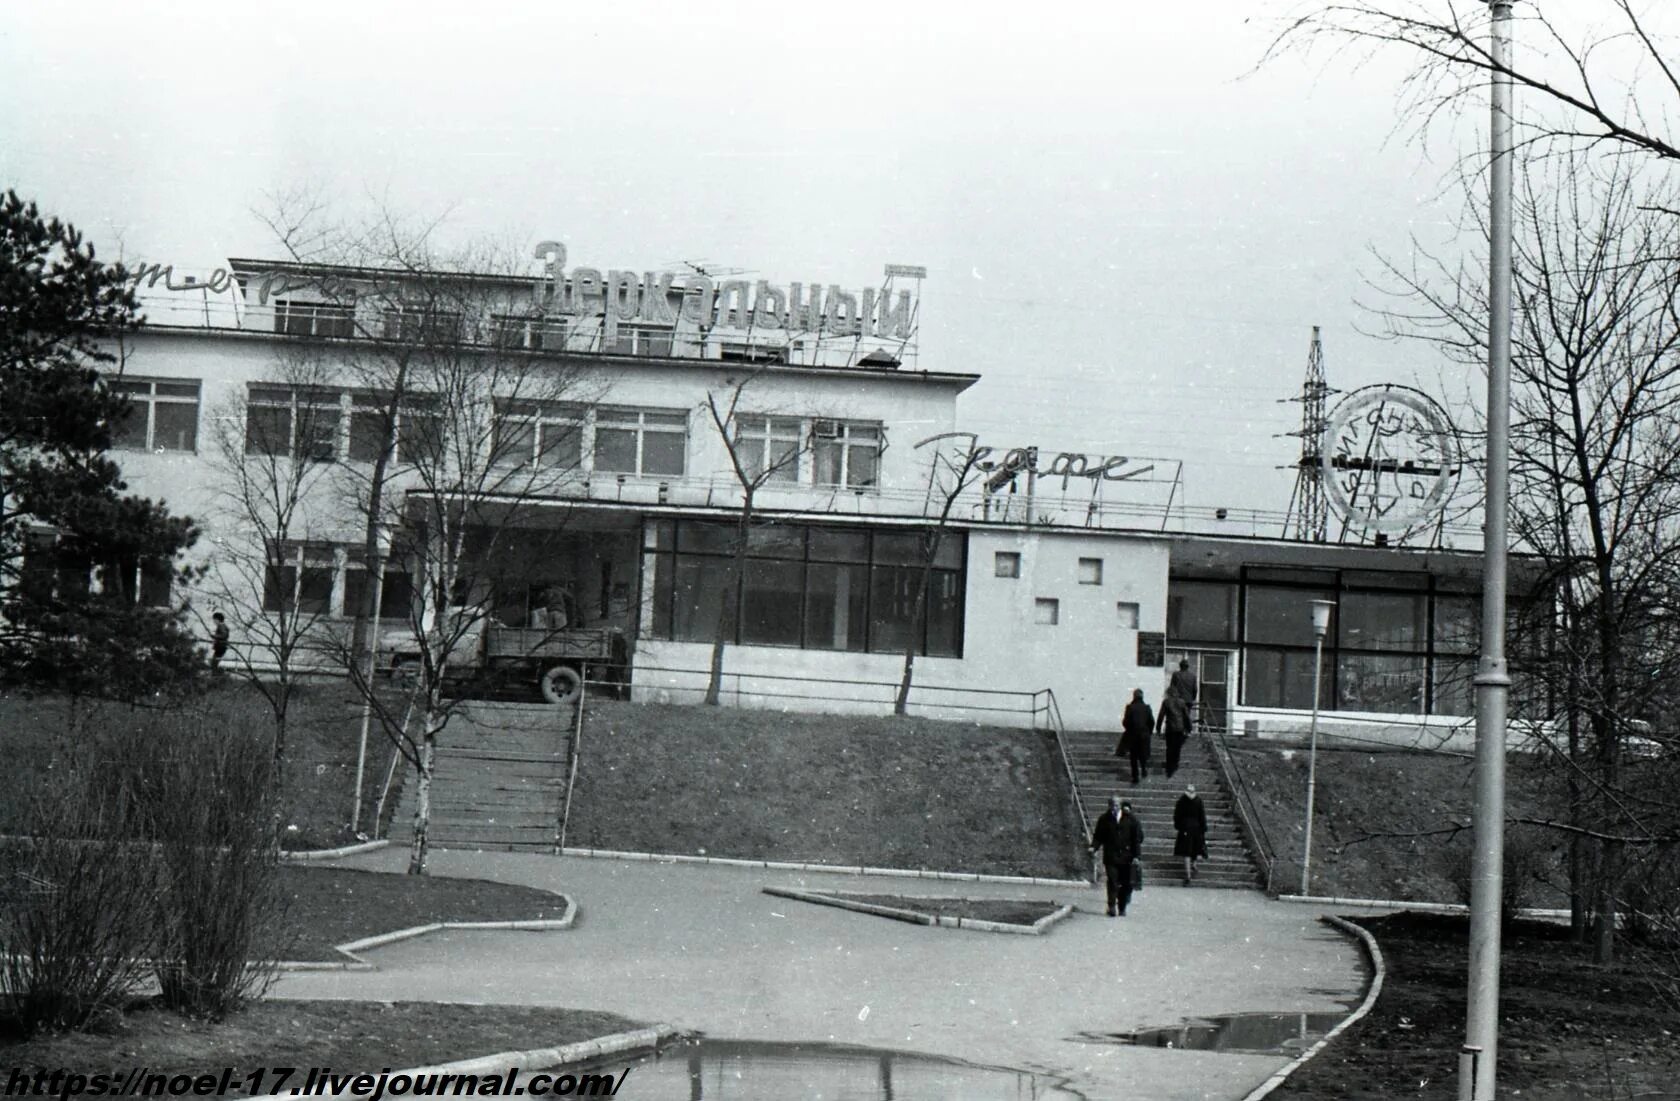 Кинотеатр Владивосток 1980. Ресторан зеркальный Владивосток на Луговой. Рестораны города Владивостока в 1980 годах. Владивосток ресторан зеркальный фото. Школа 11 владивосток